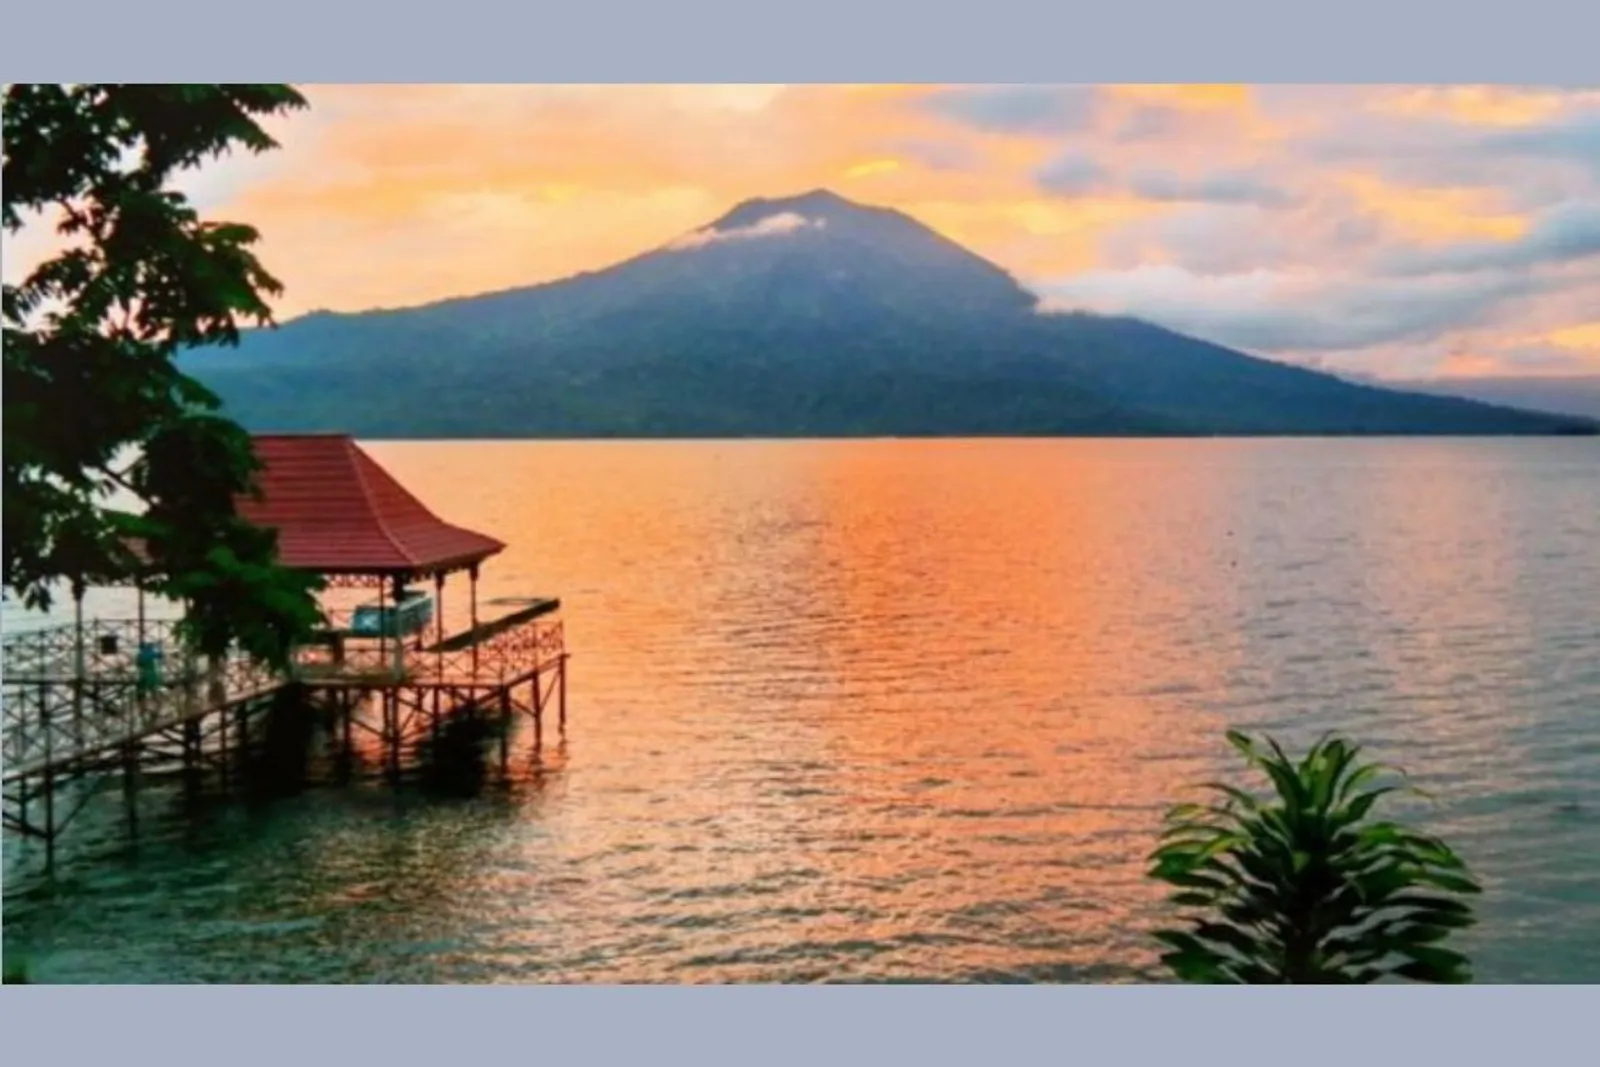 Dari Mulai Bukit Sampai Air Terjun, Inilah 10 Destinasi Wisata Lampung